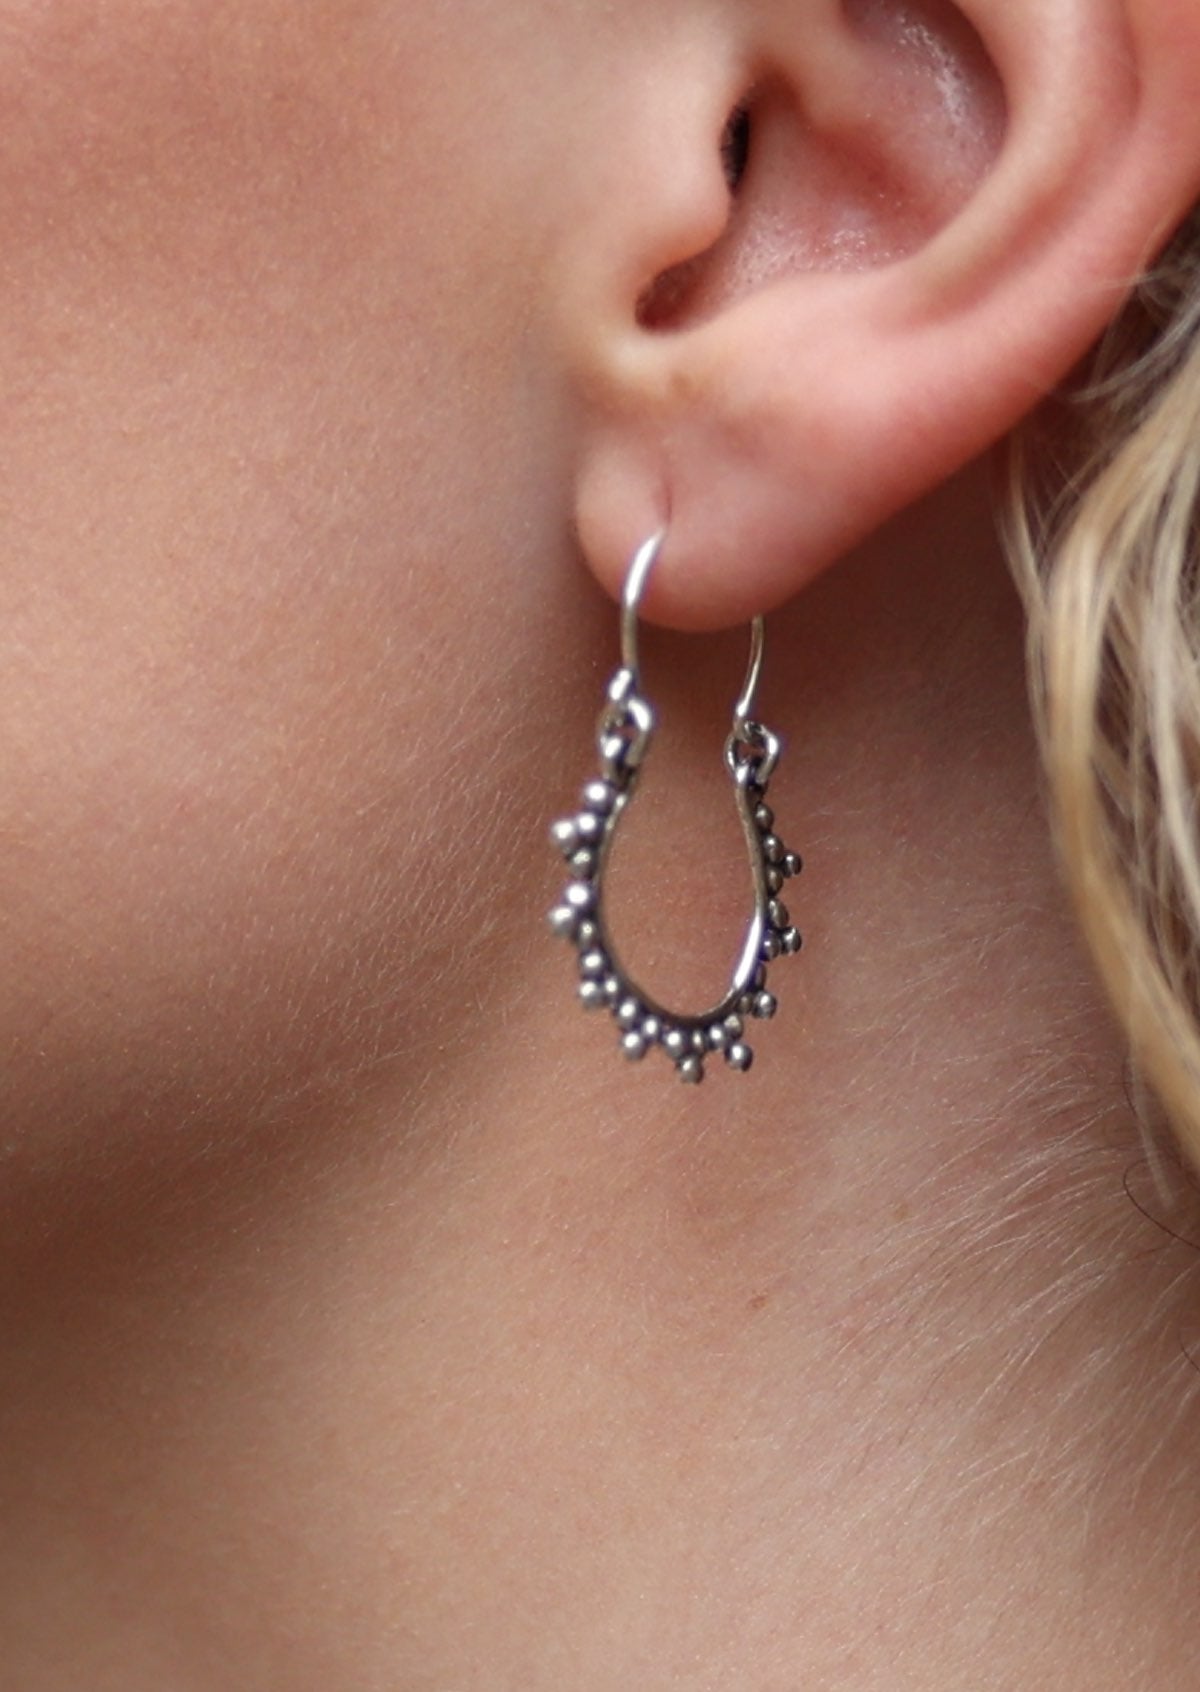 Sweet silver hook earrings